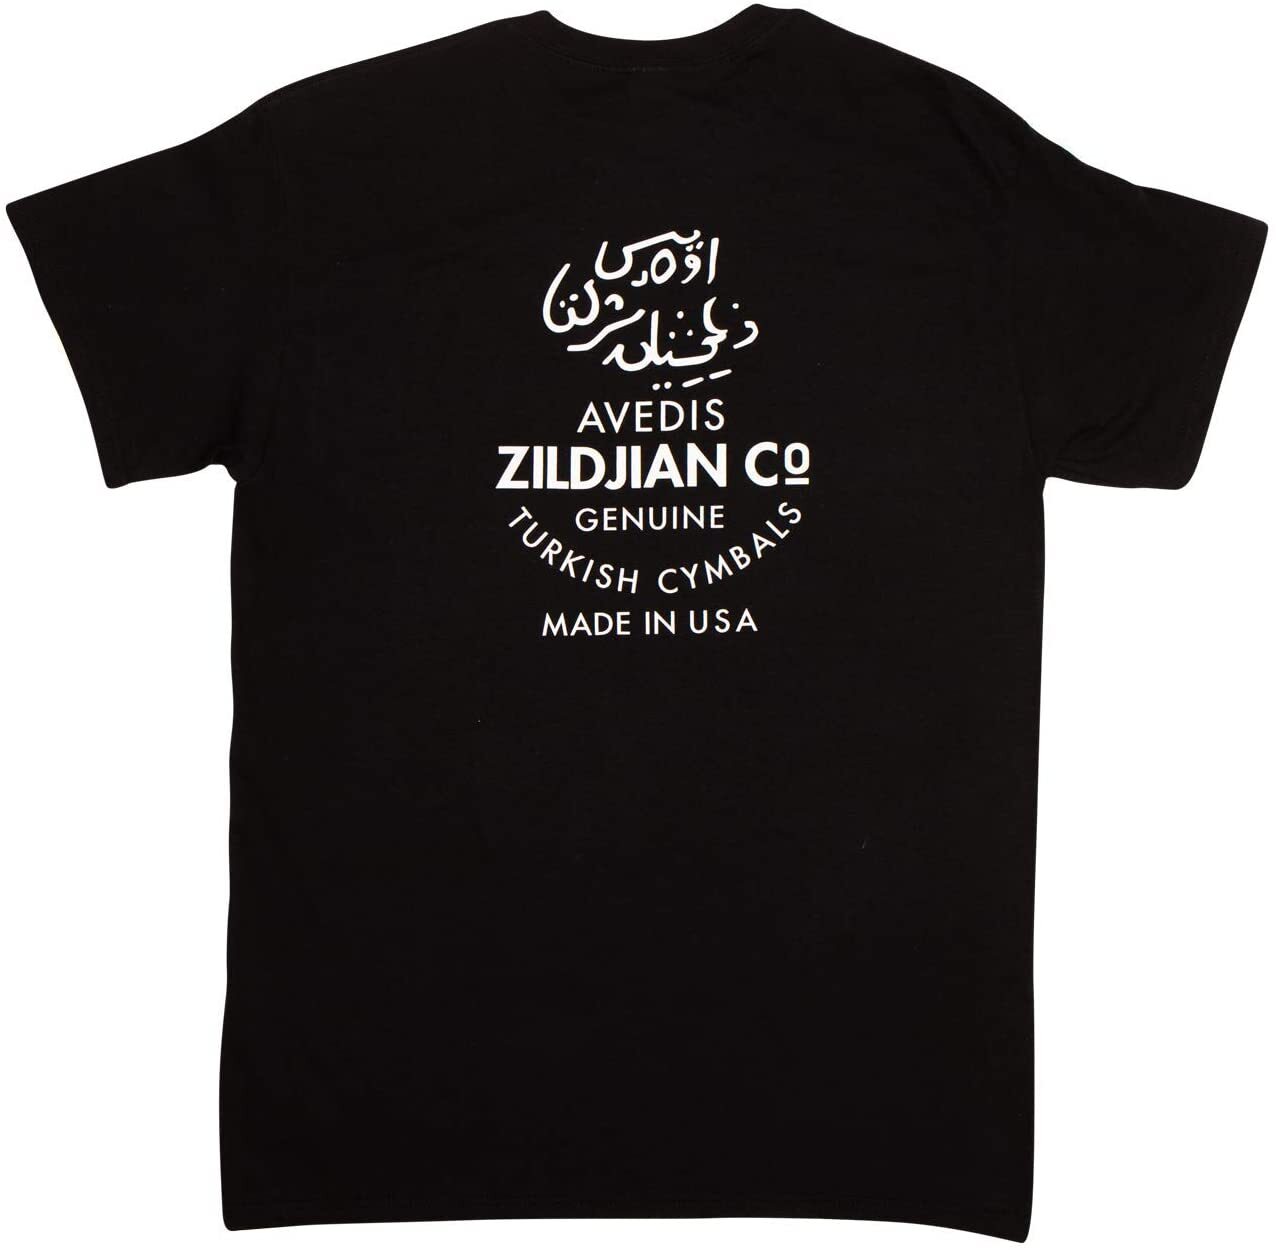 Zildjian T3002 Classic Black Logo Tee - Medium